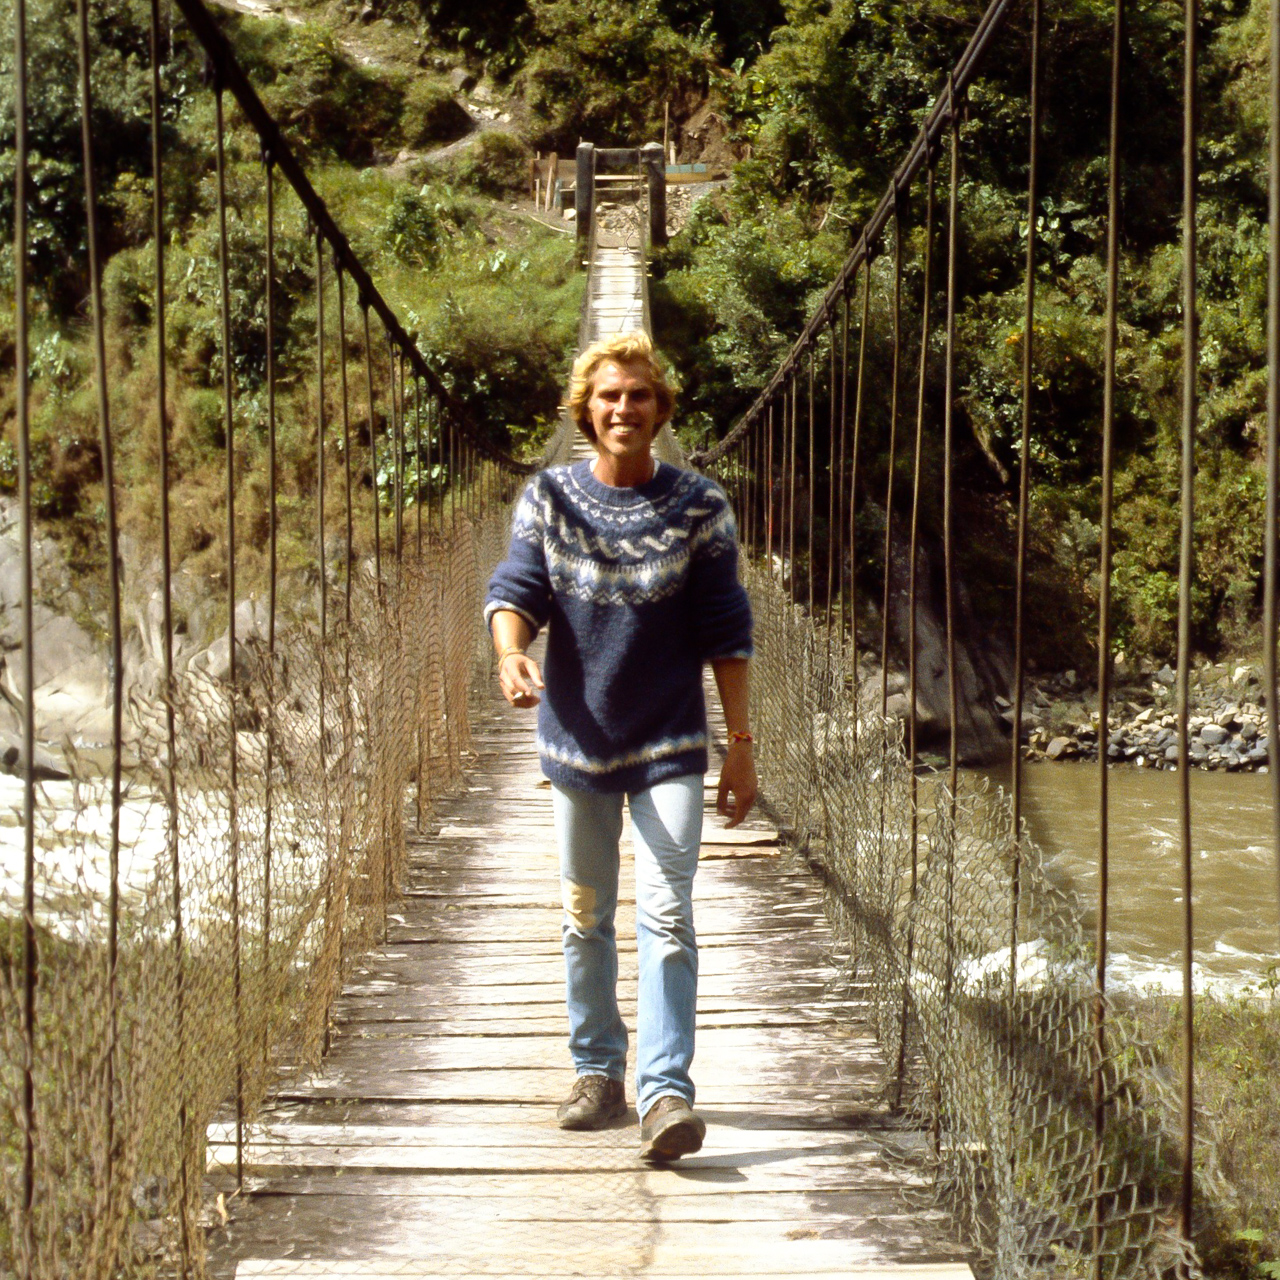 Bridge over Rio Cutuchi, Baños, Ecuador